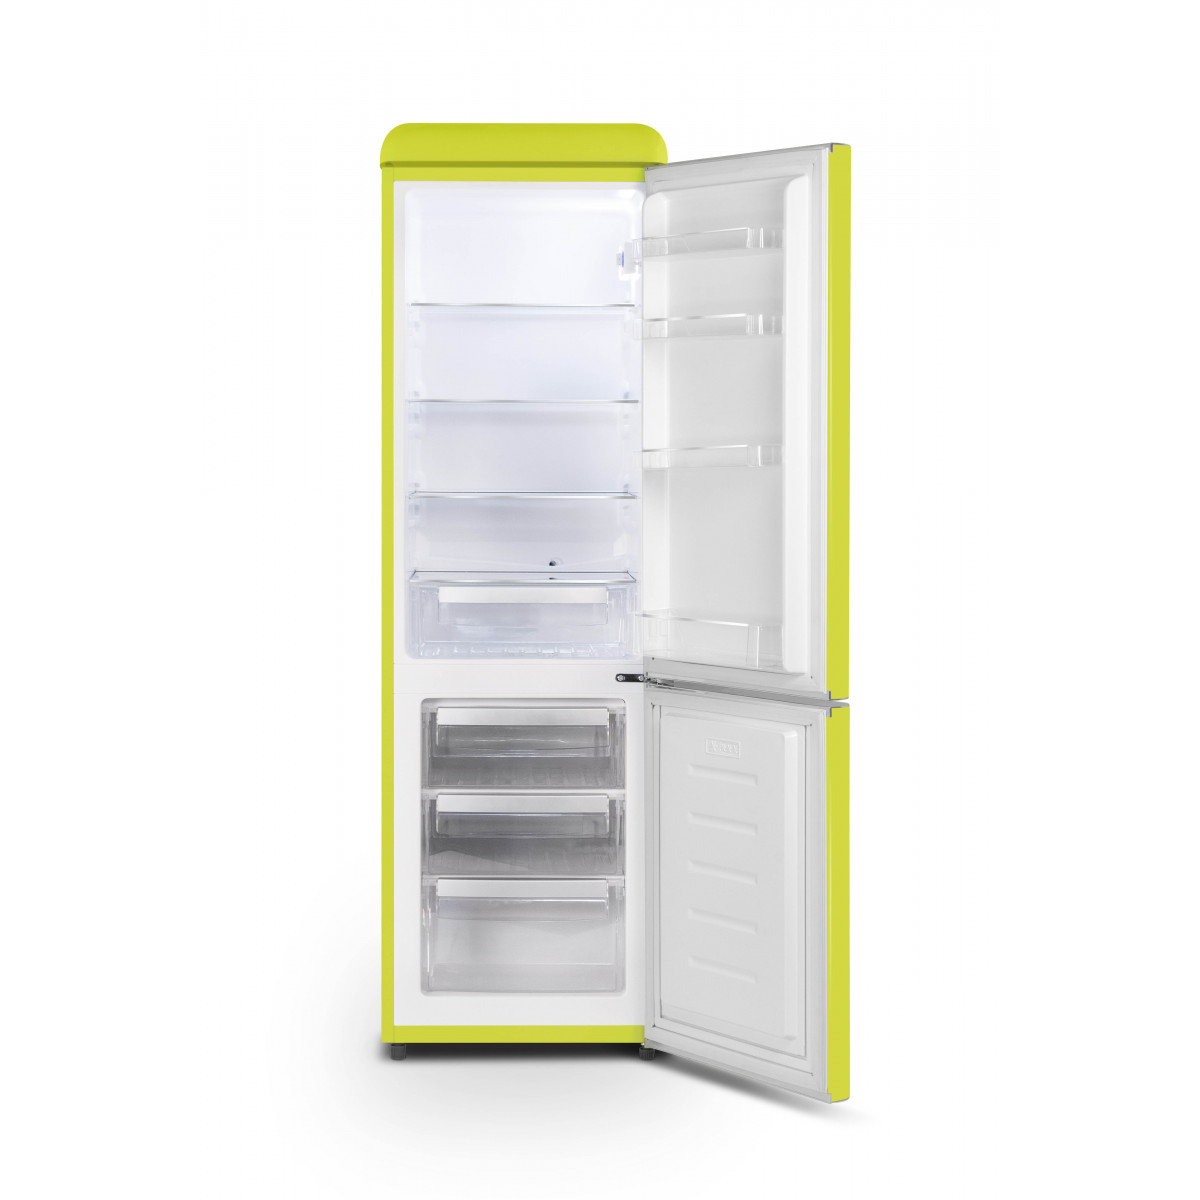 Test Schneider SCCB250V : l'un des réfrigérateurs vintage les moins chers  du marché - Les Numériques